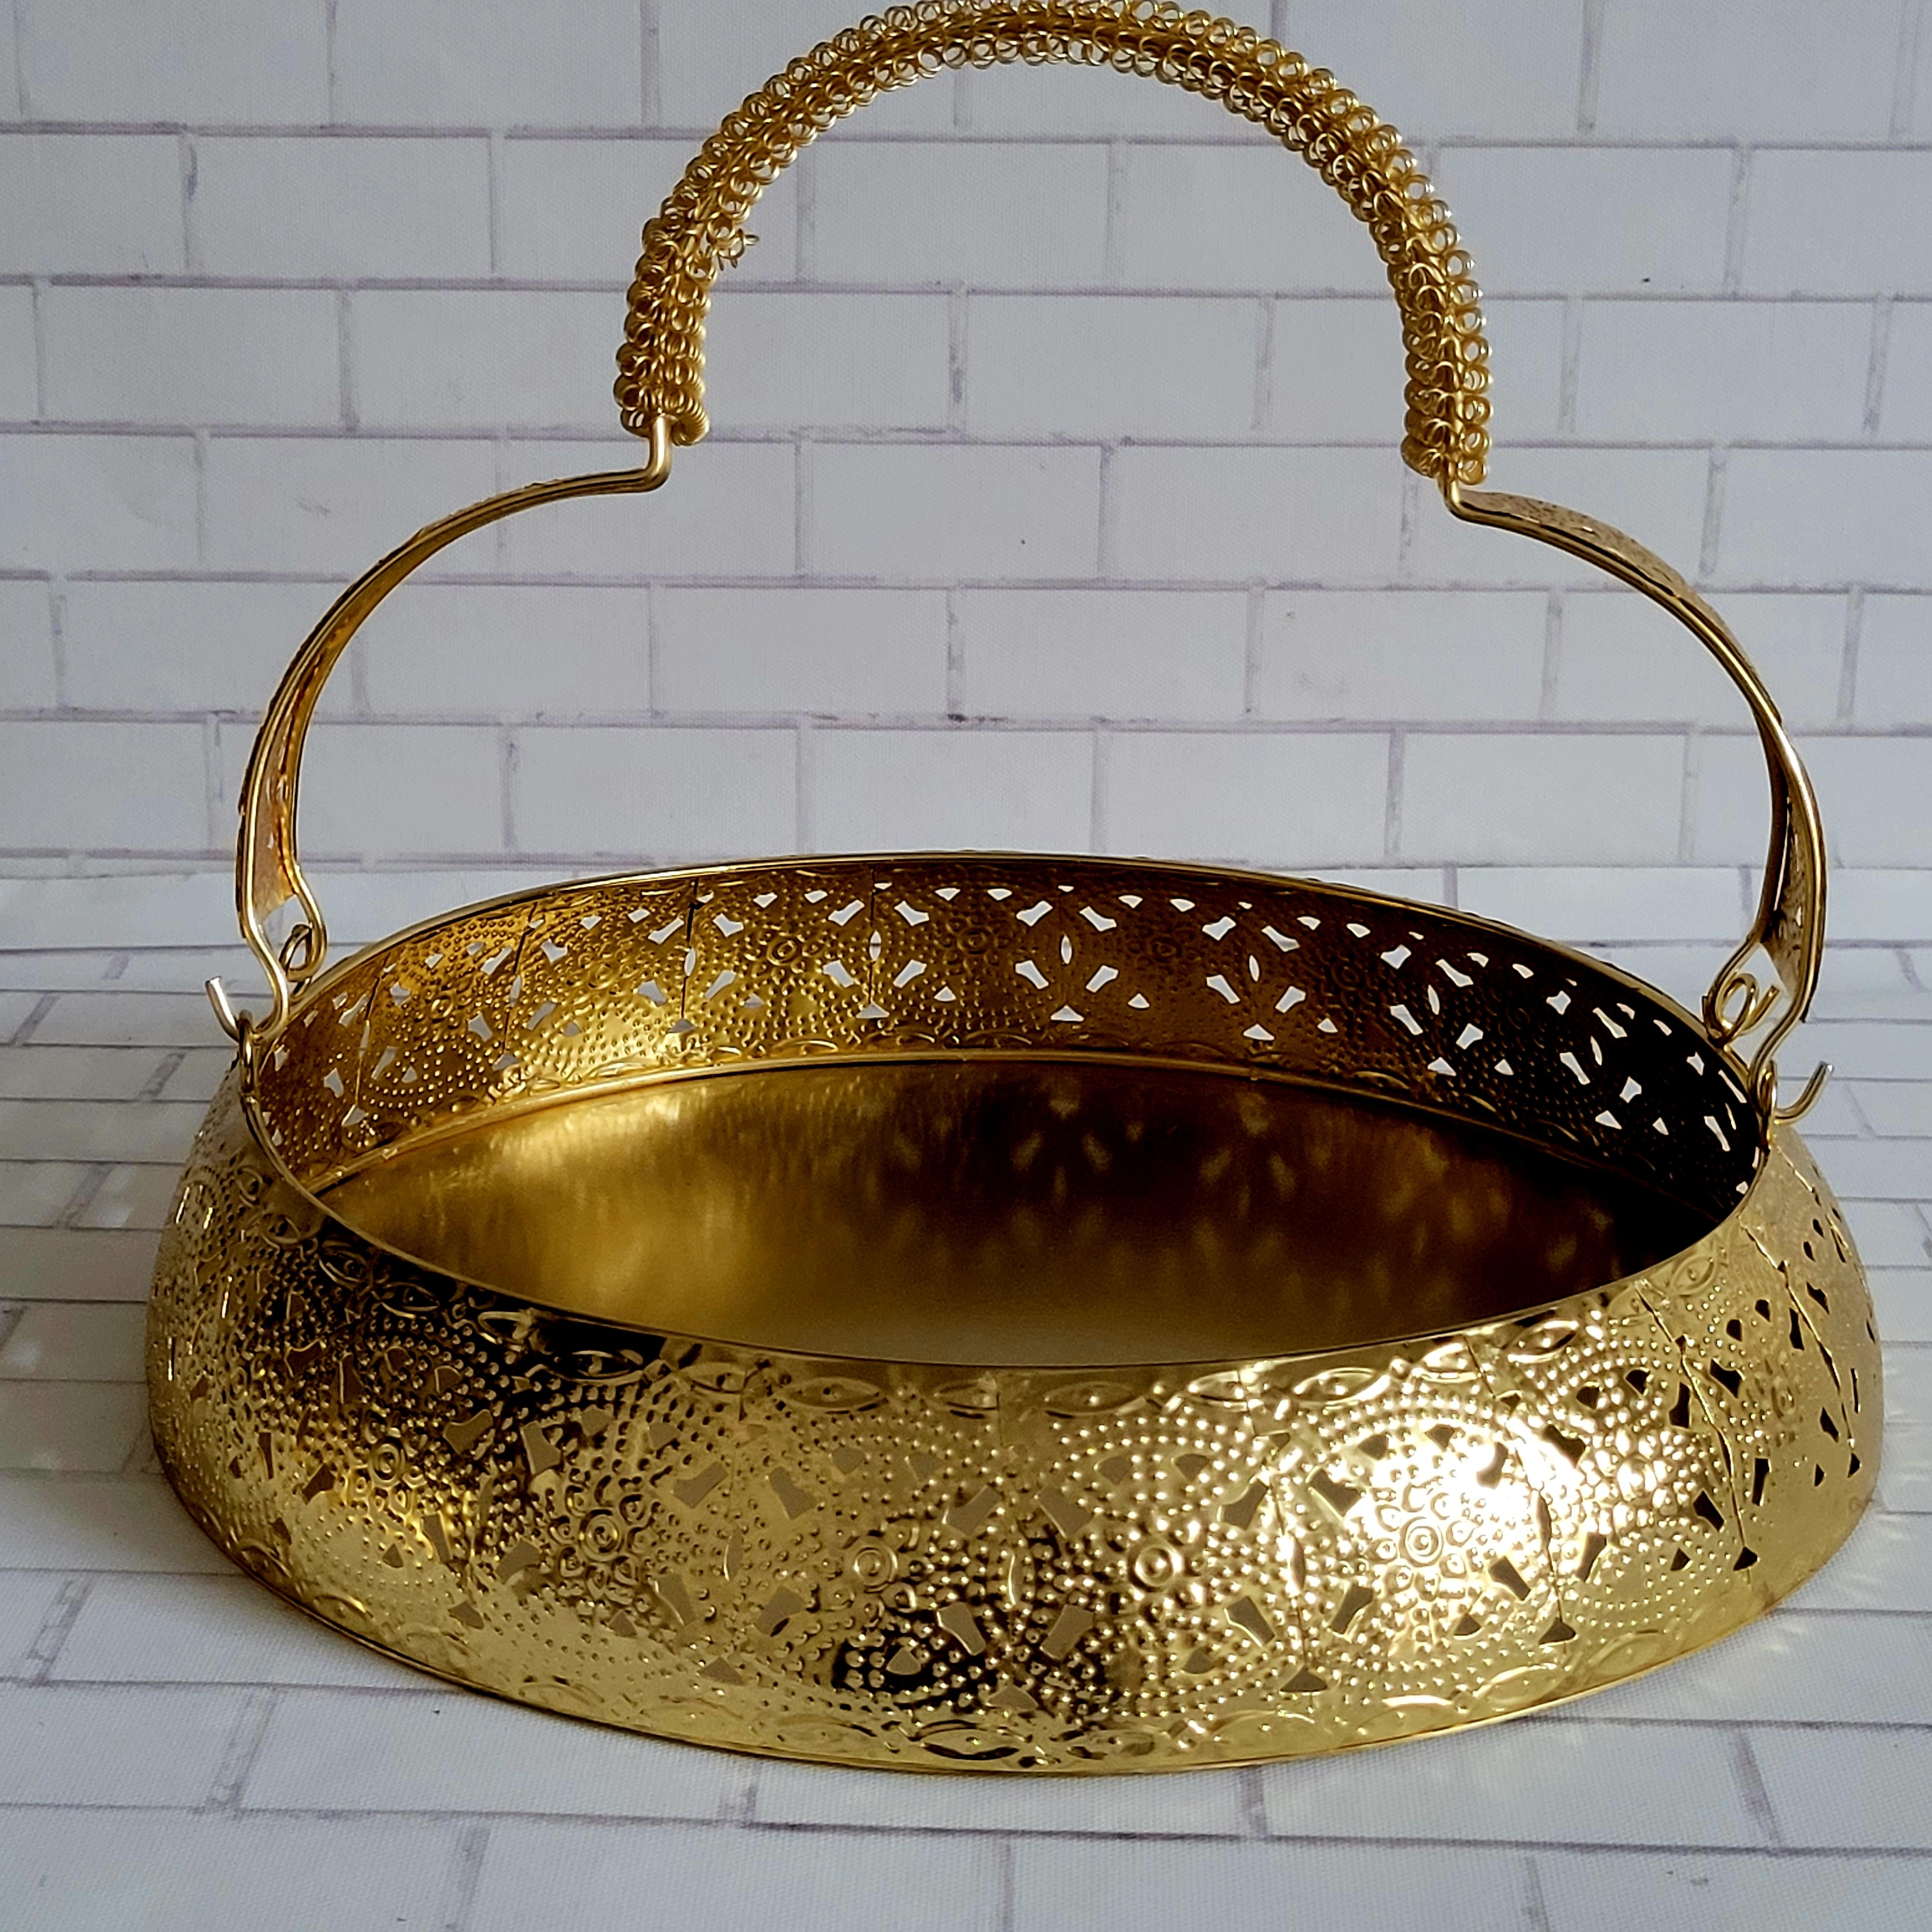 Floral art | Golden Metal Basket with Handle undefined